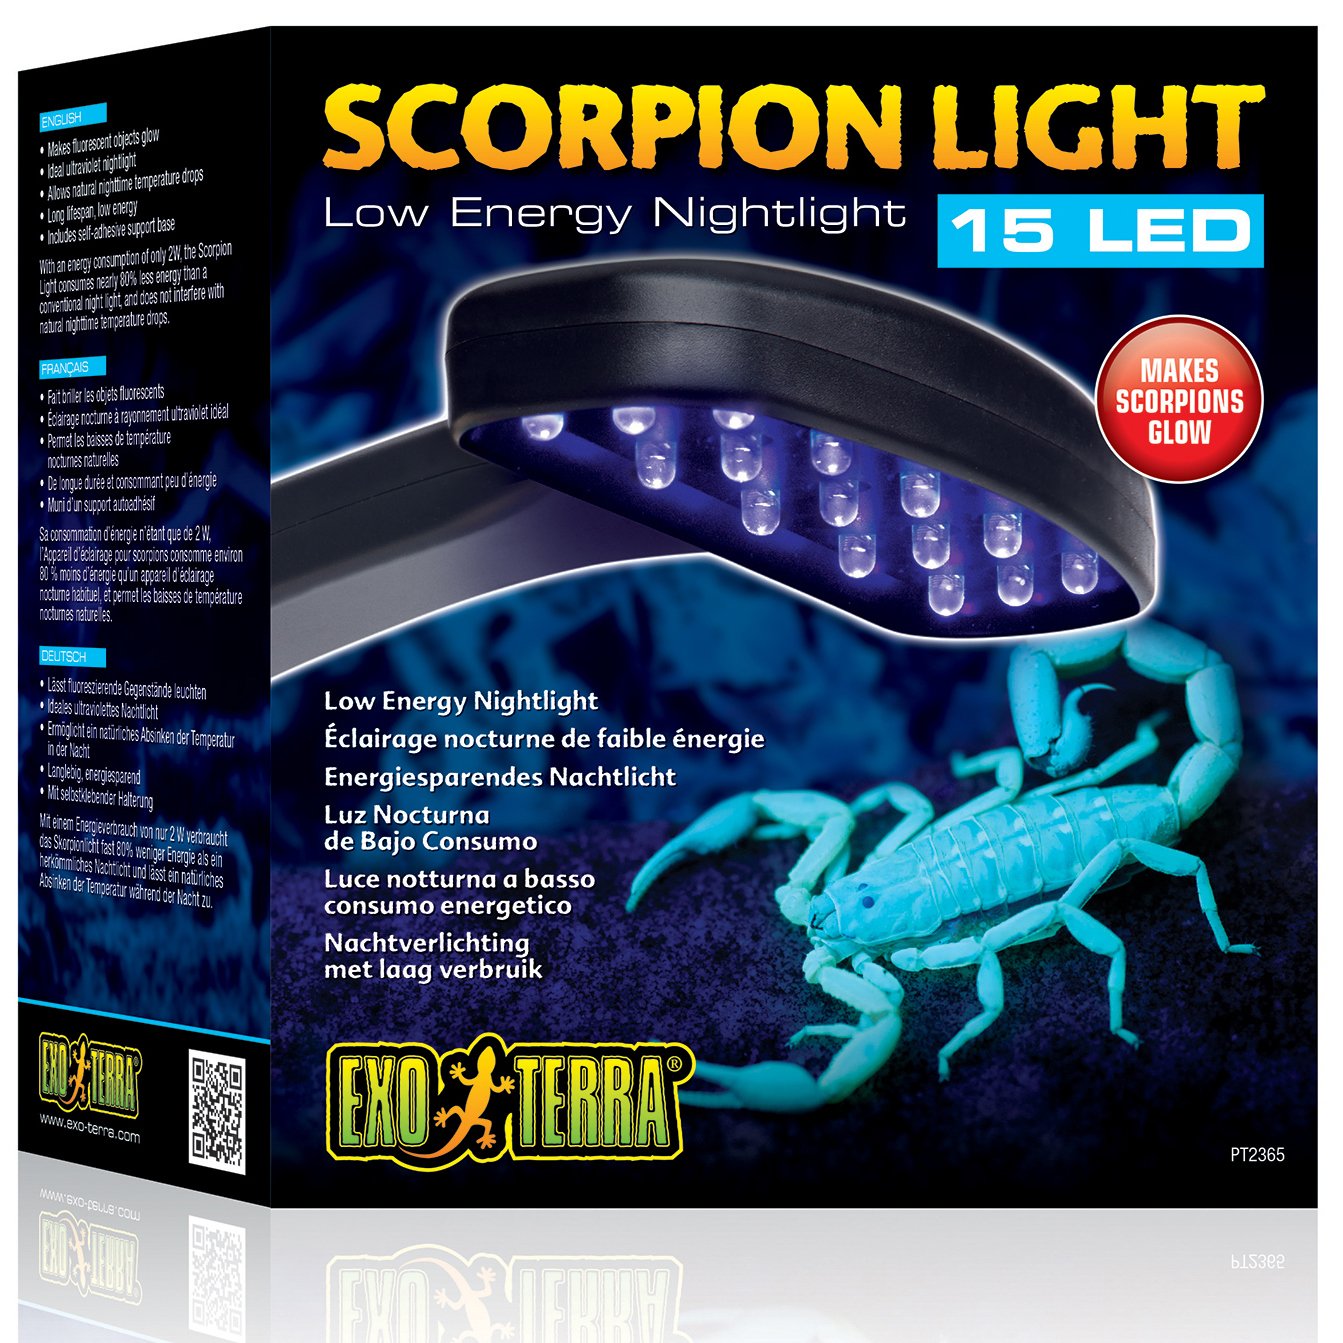 Exo Terra Scorpion Light, Skorpion Licht, energiesparendes ultraviolettes LED Nachtlicht, lässt fluoreszierende Gegenstände leuchten, 2W, 1 Stück (1er Pack)